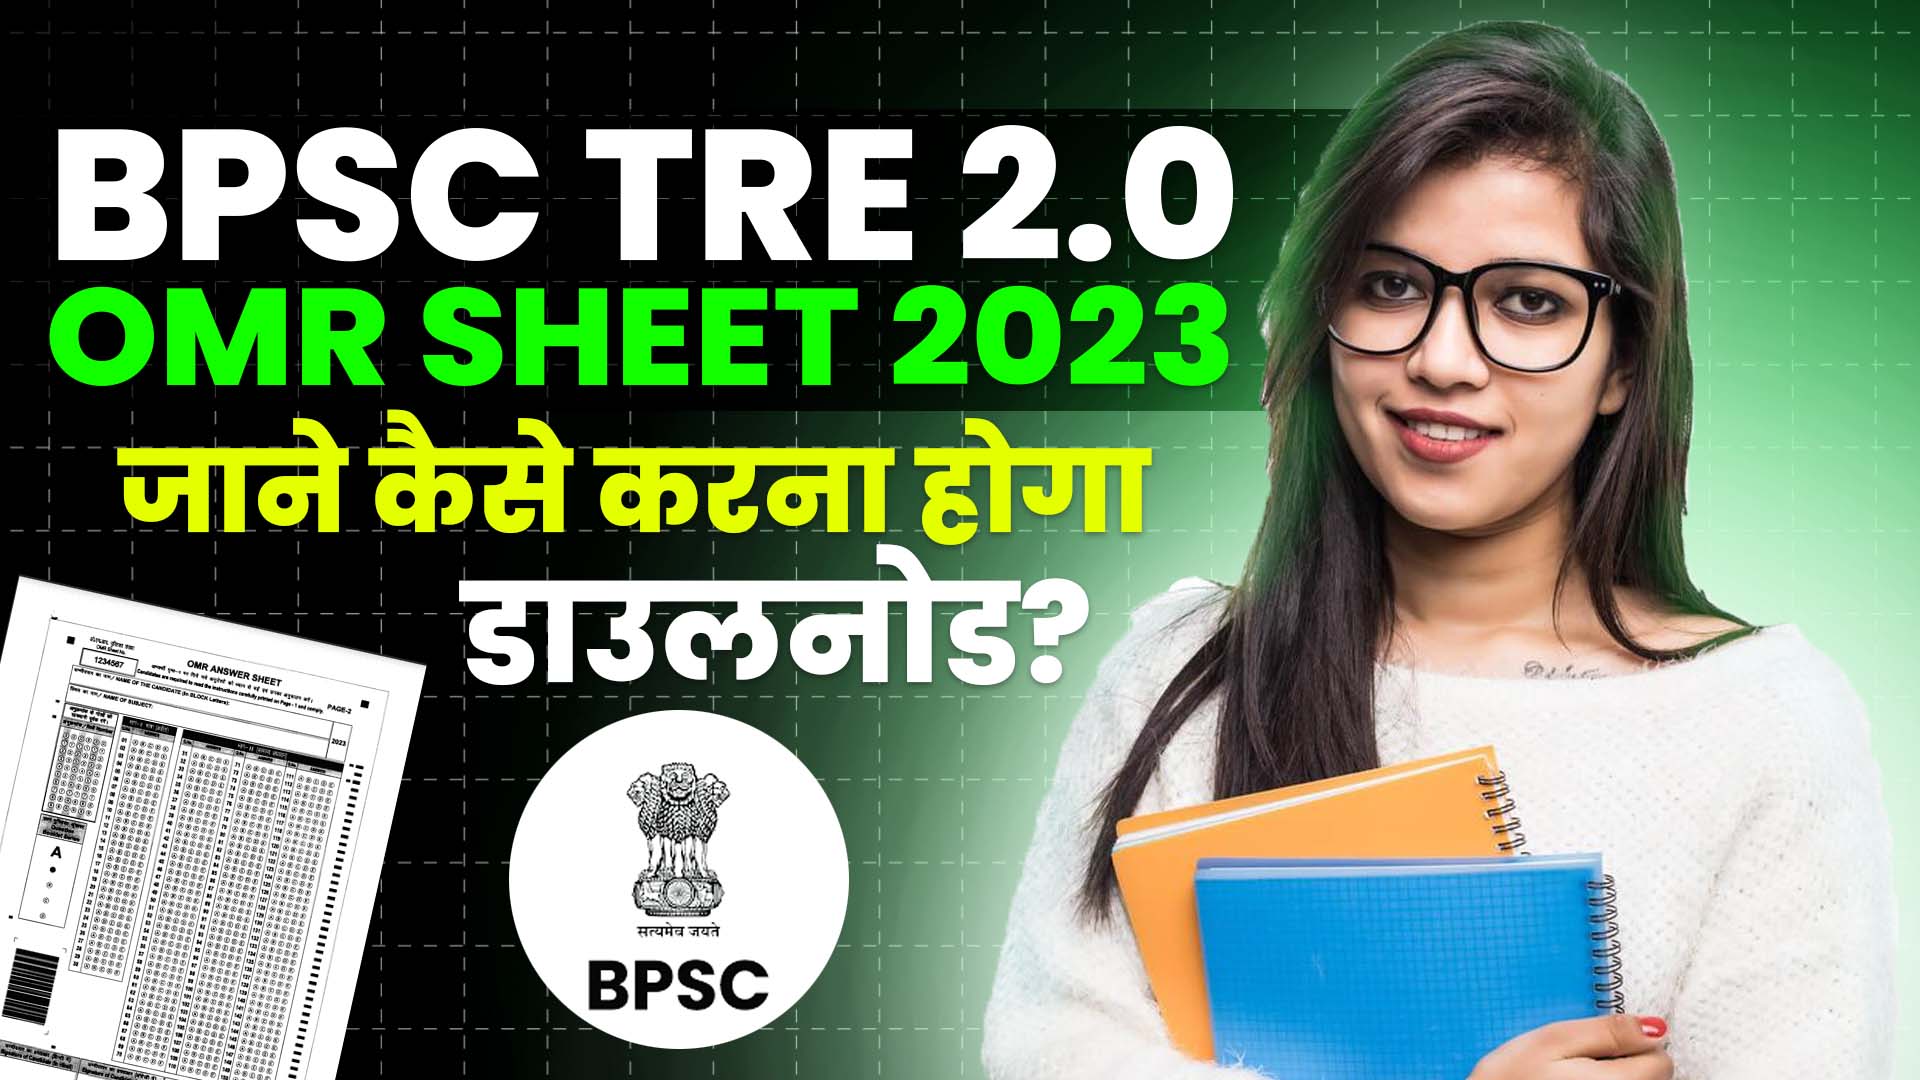 BPSC TRE 2.0 OMR Sheet 2023